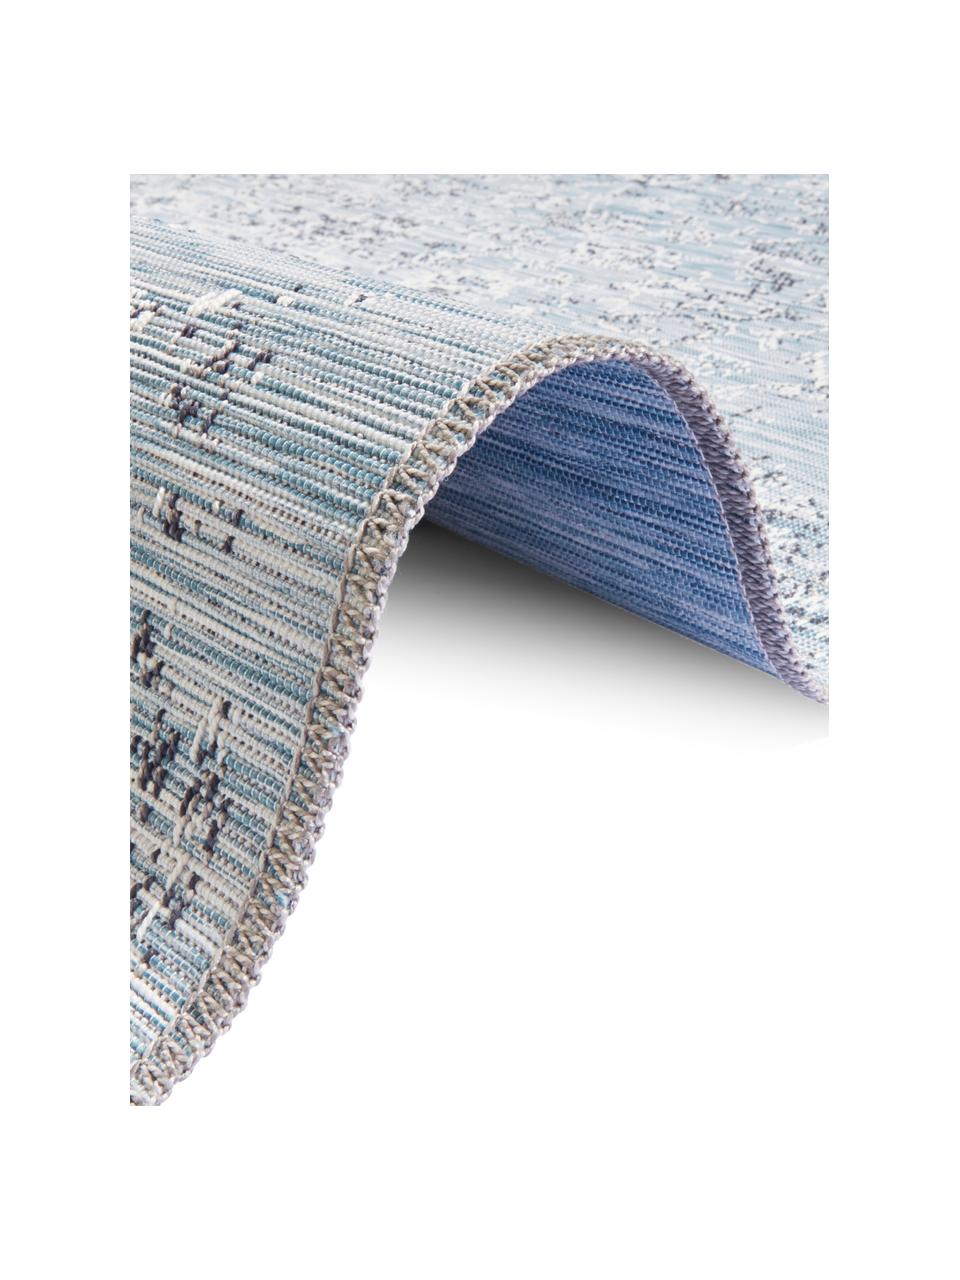 In- & Outdoor-Teppich Orient im Vintage Style, 100% Polypropylen, Blautöne, B 190 x L 290 cm (Größe L)